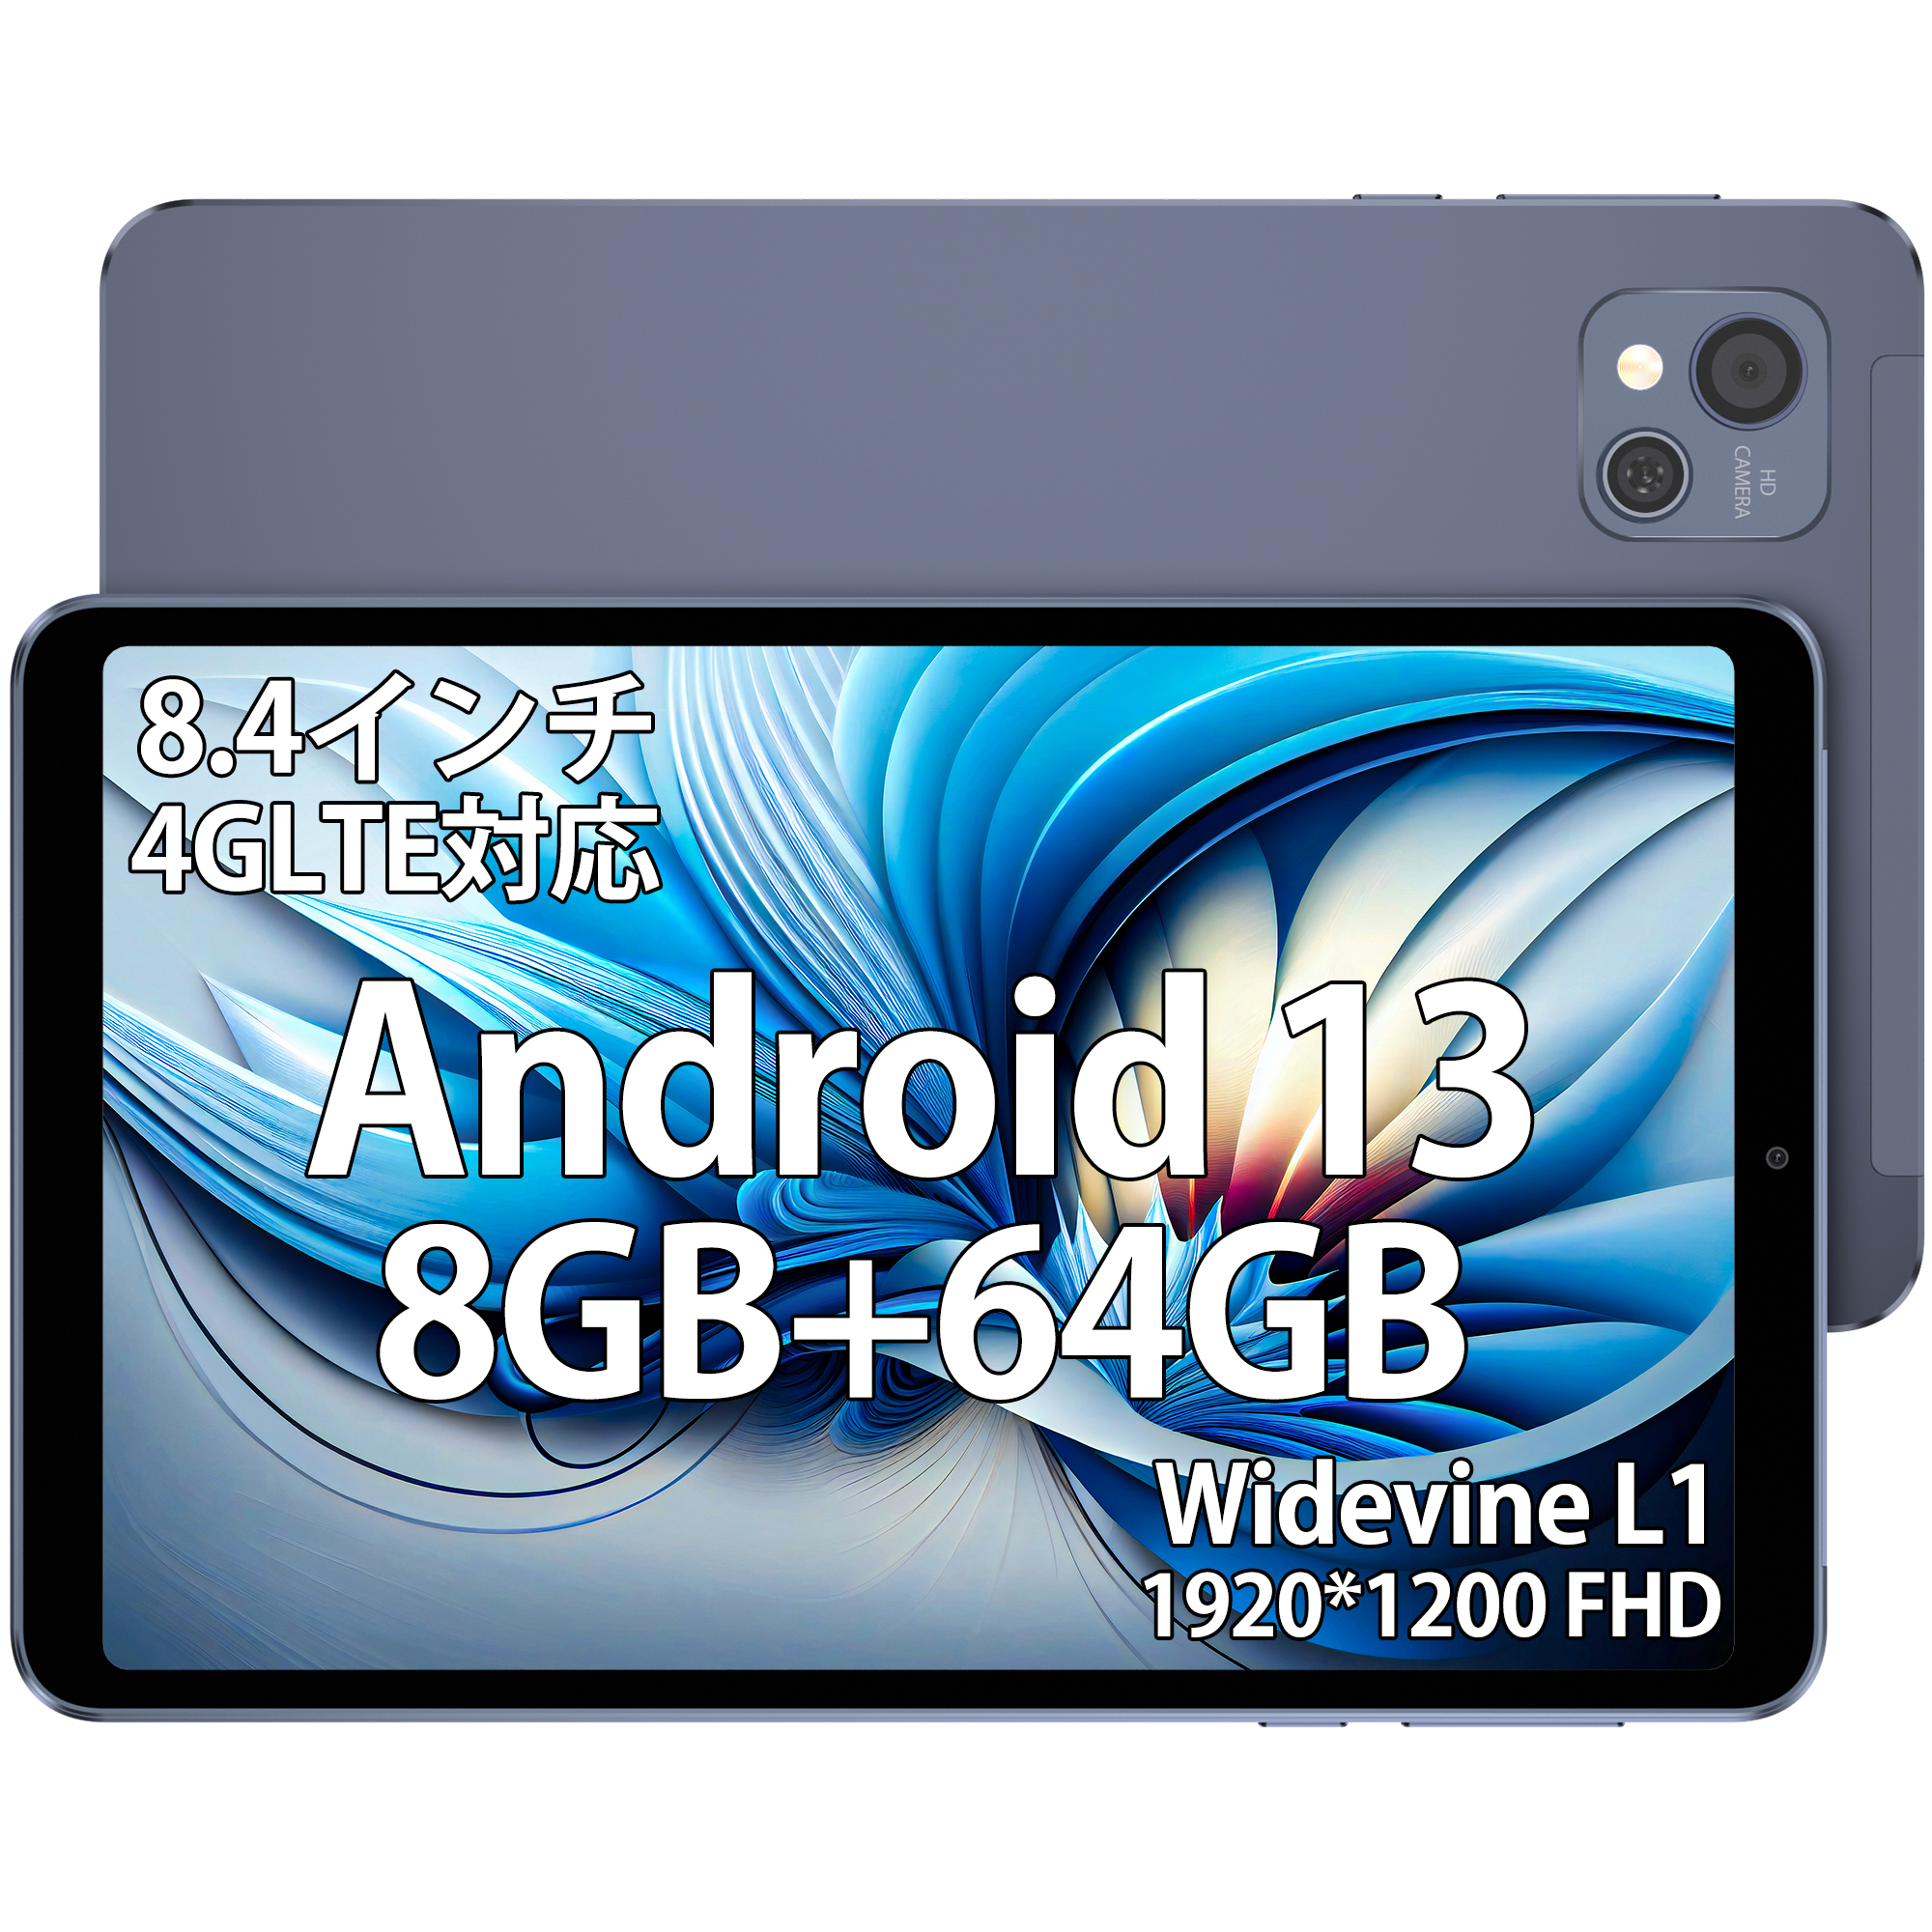 AAUW タブレット M60 Android13 8.4インチ 高画質 IPS 1920*1200 LTE(4G) Wi-Fiモデル 8コア 8GB+64GB カメラ8MP/5MP Bluetooth5.0 大容量バッテリー 5000mAh コスパ最高のサムネイル